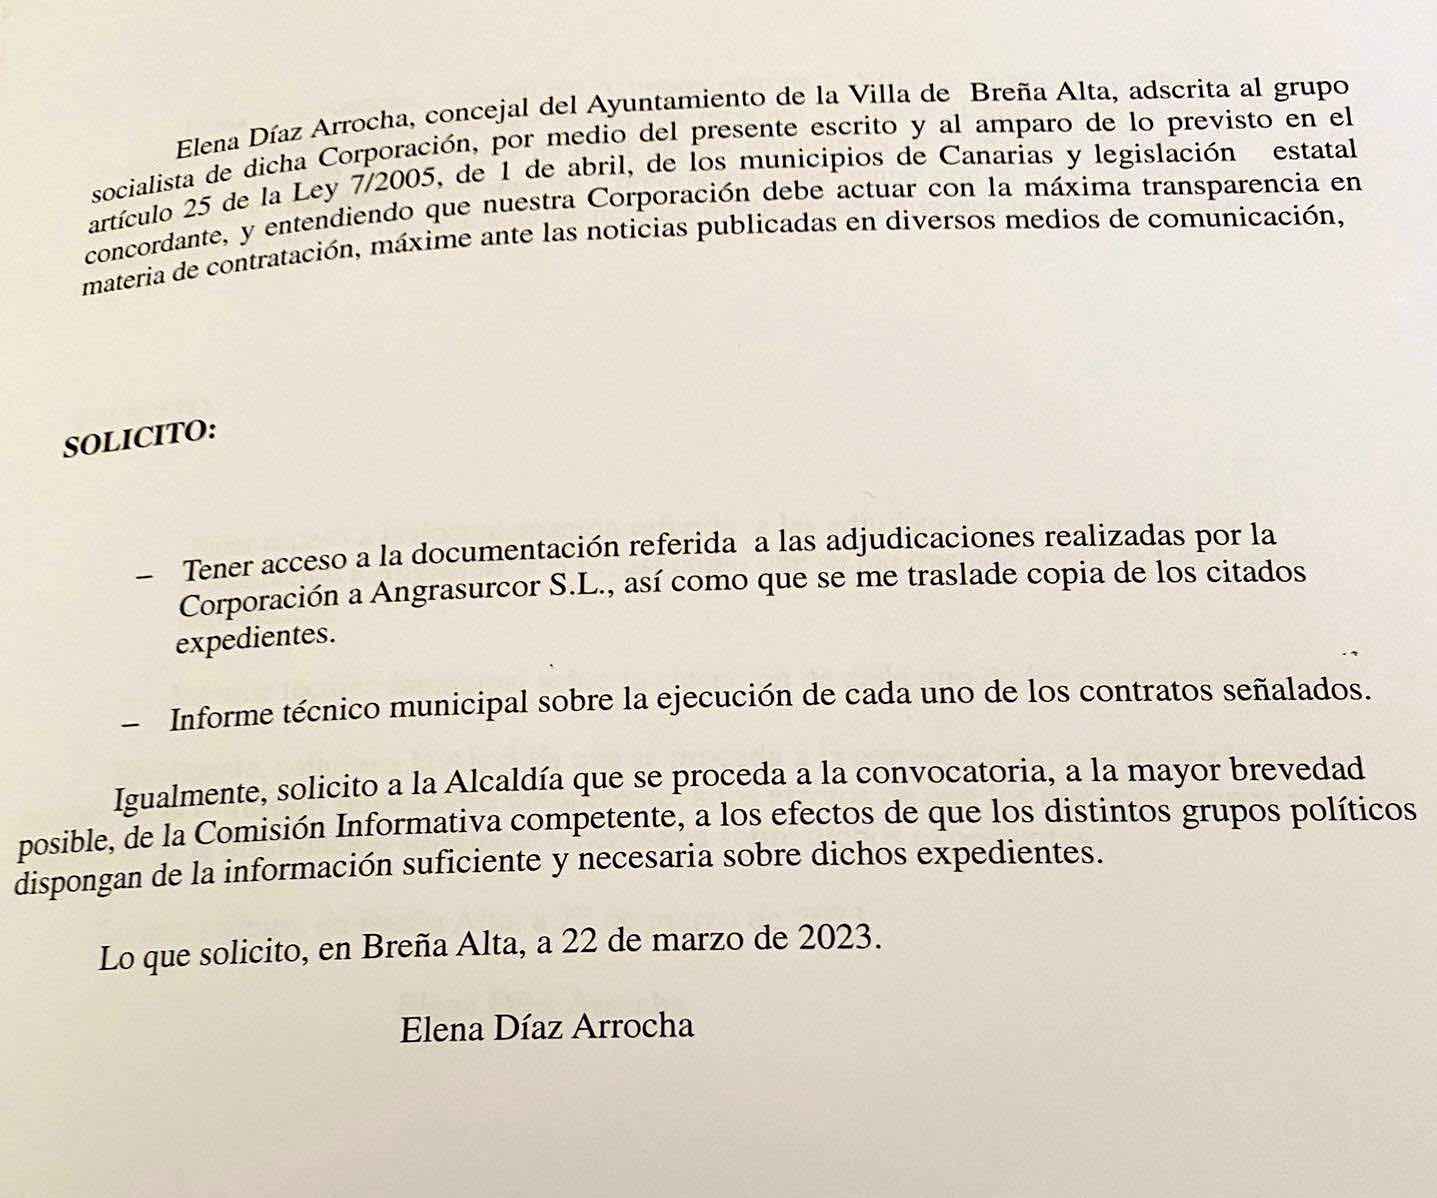 El PSOE denuncia que el alcalde de Breña Alta miente y atropella la legítima labor democrática de la oposición en el Ayuntamiento